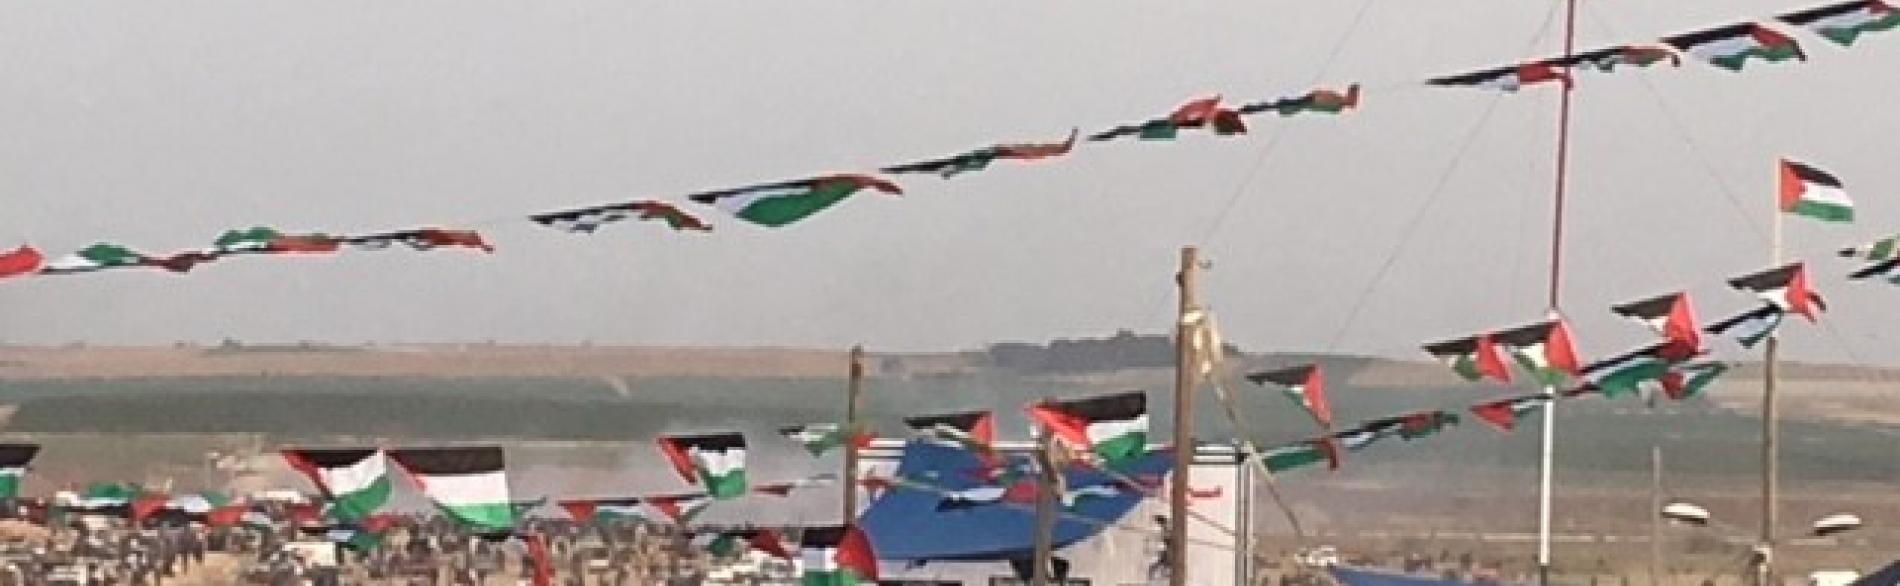 مظاهرة في سياق "مسيرة العودة الكبرى" بالقرب من السياج الحدودي، شرق مدينة غزة، 13 نيسان/أبريل 2018 